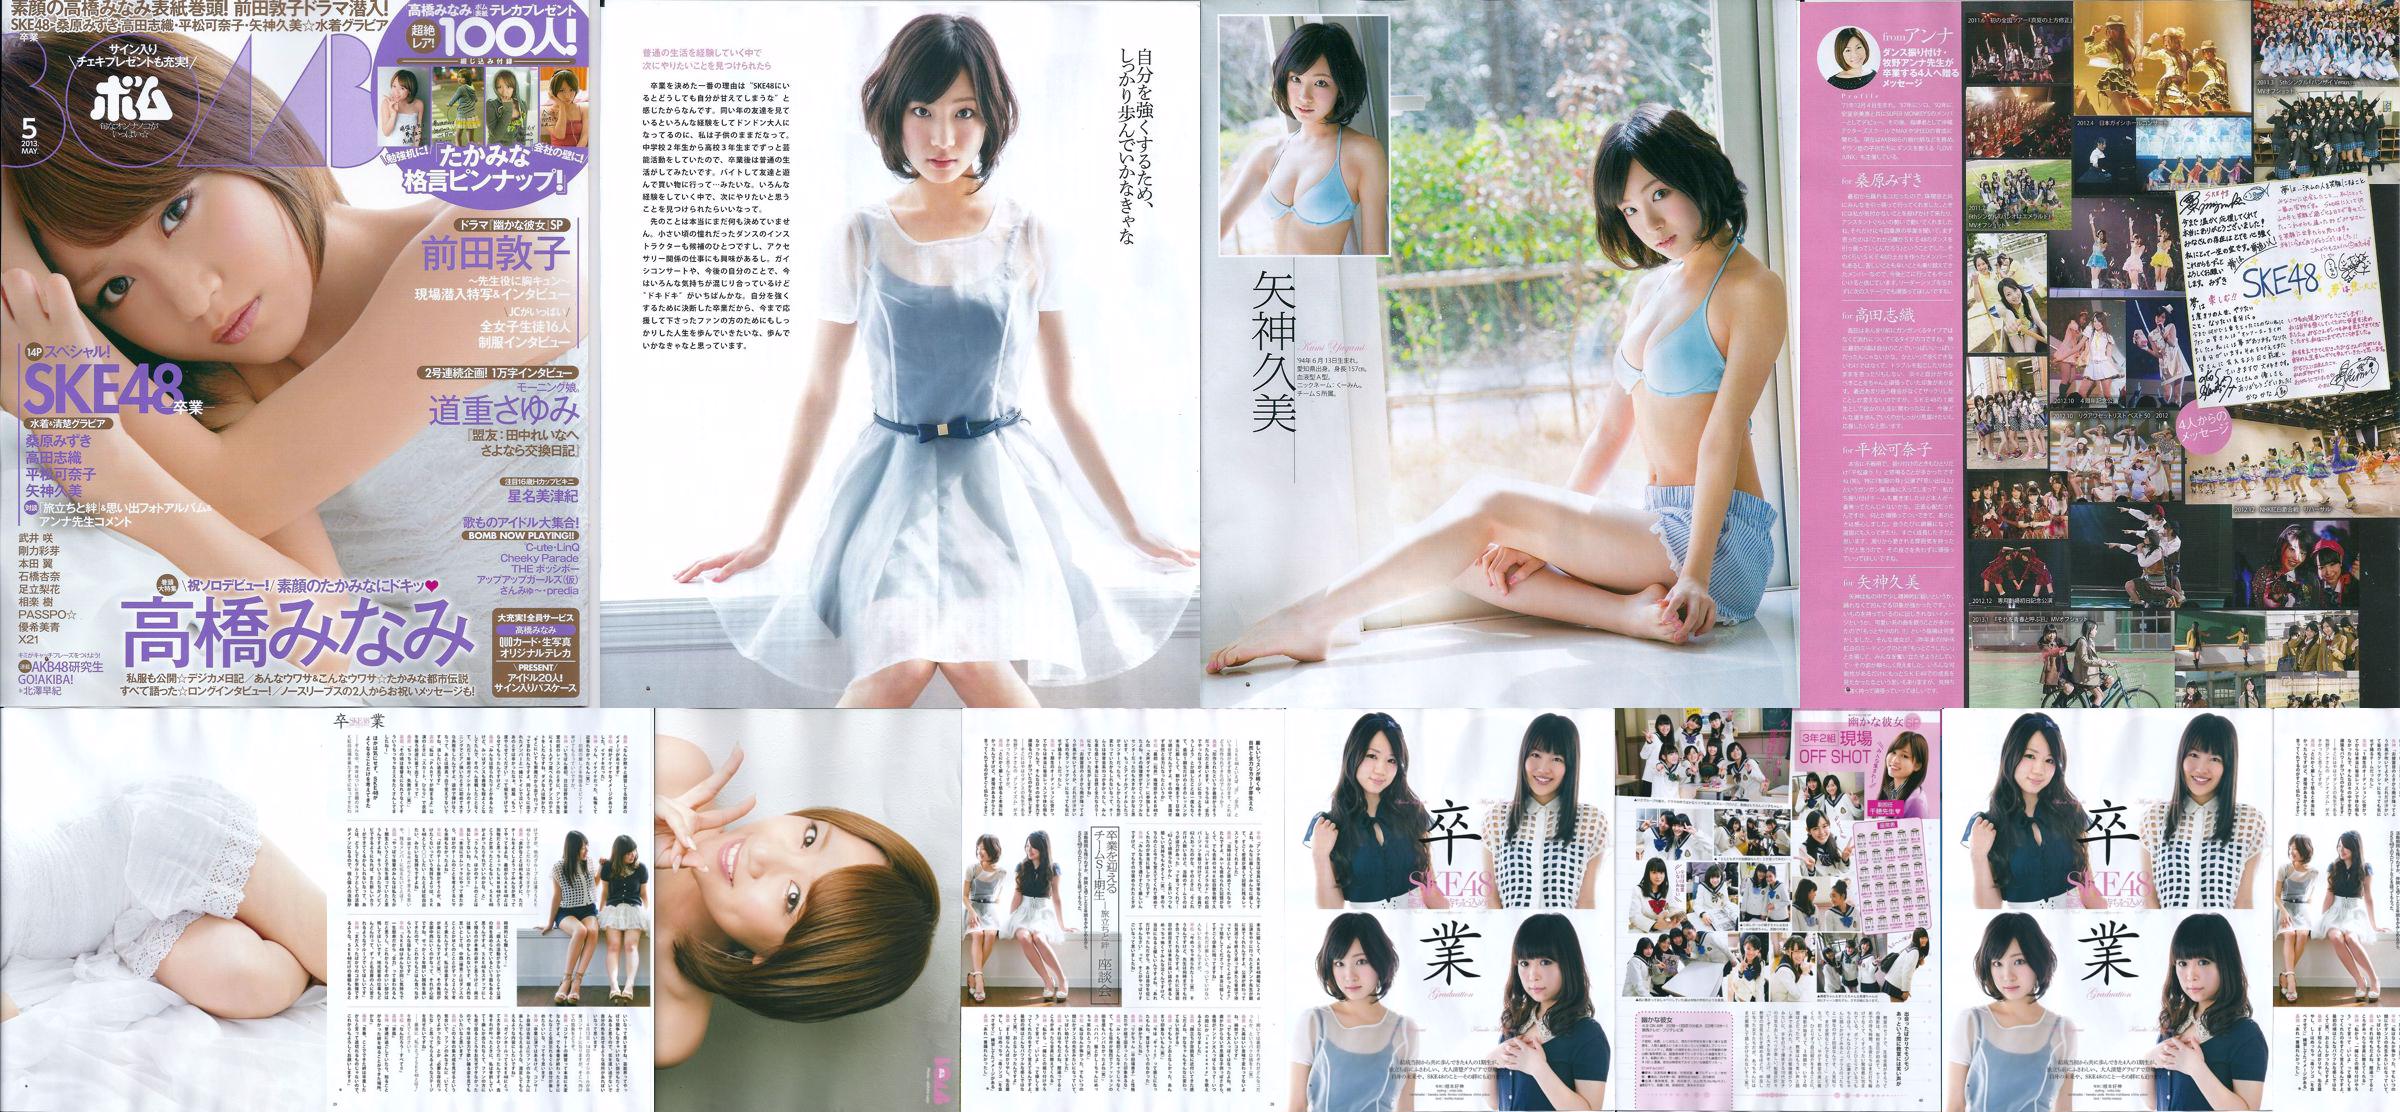 [Bomb Magazine] 2013 No.05 八神來未南高橋前田敦子寫真 No.57049c 第7頁